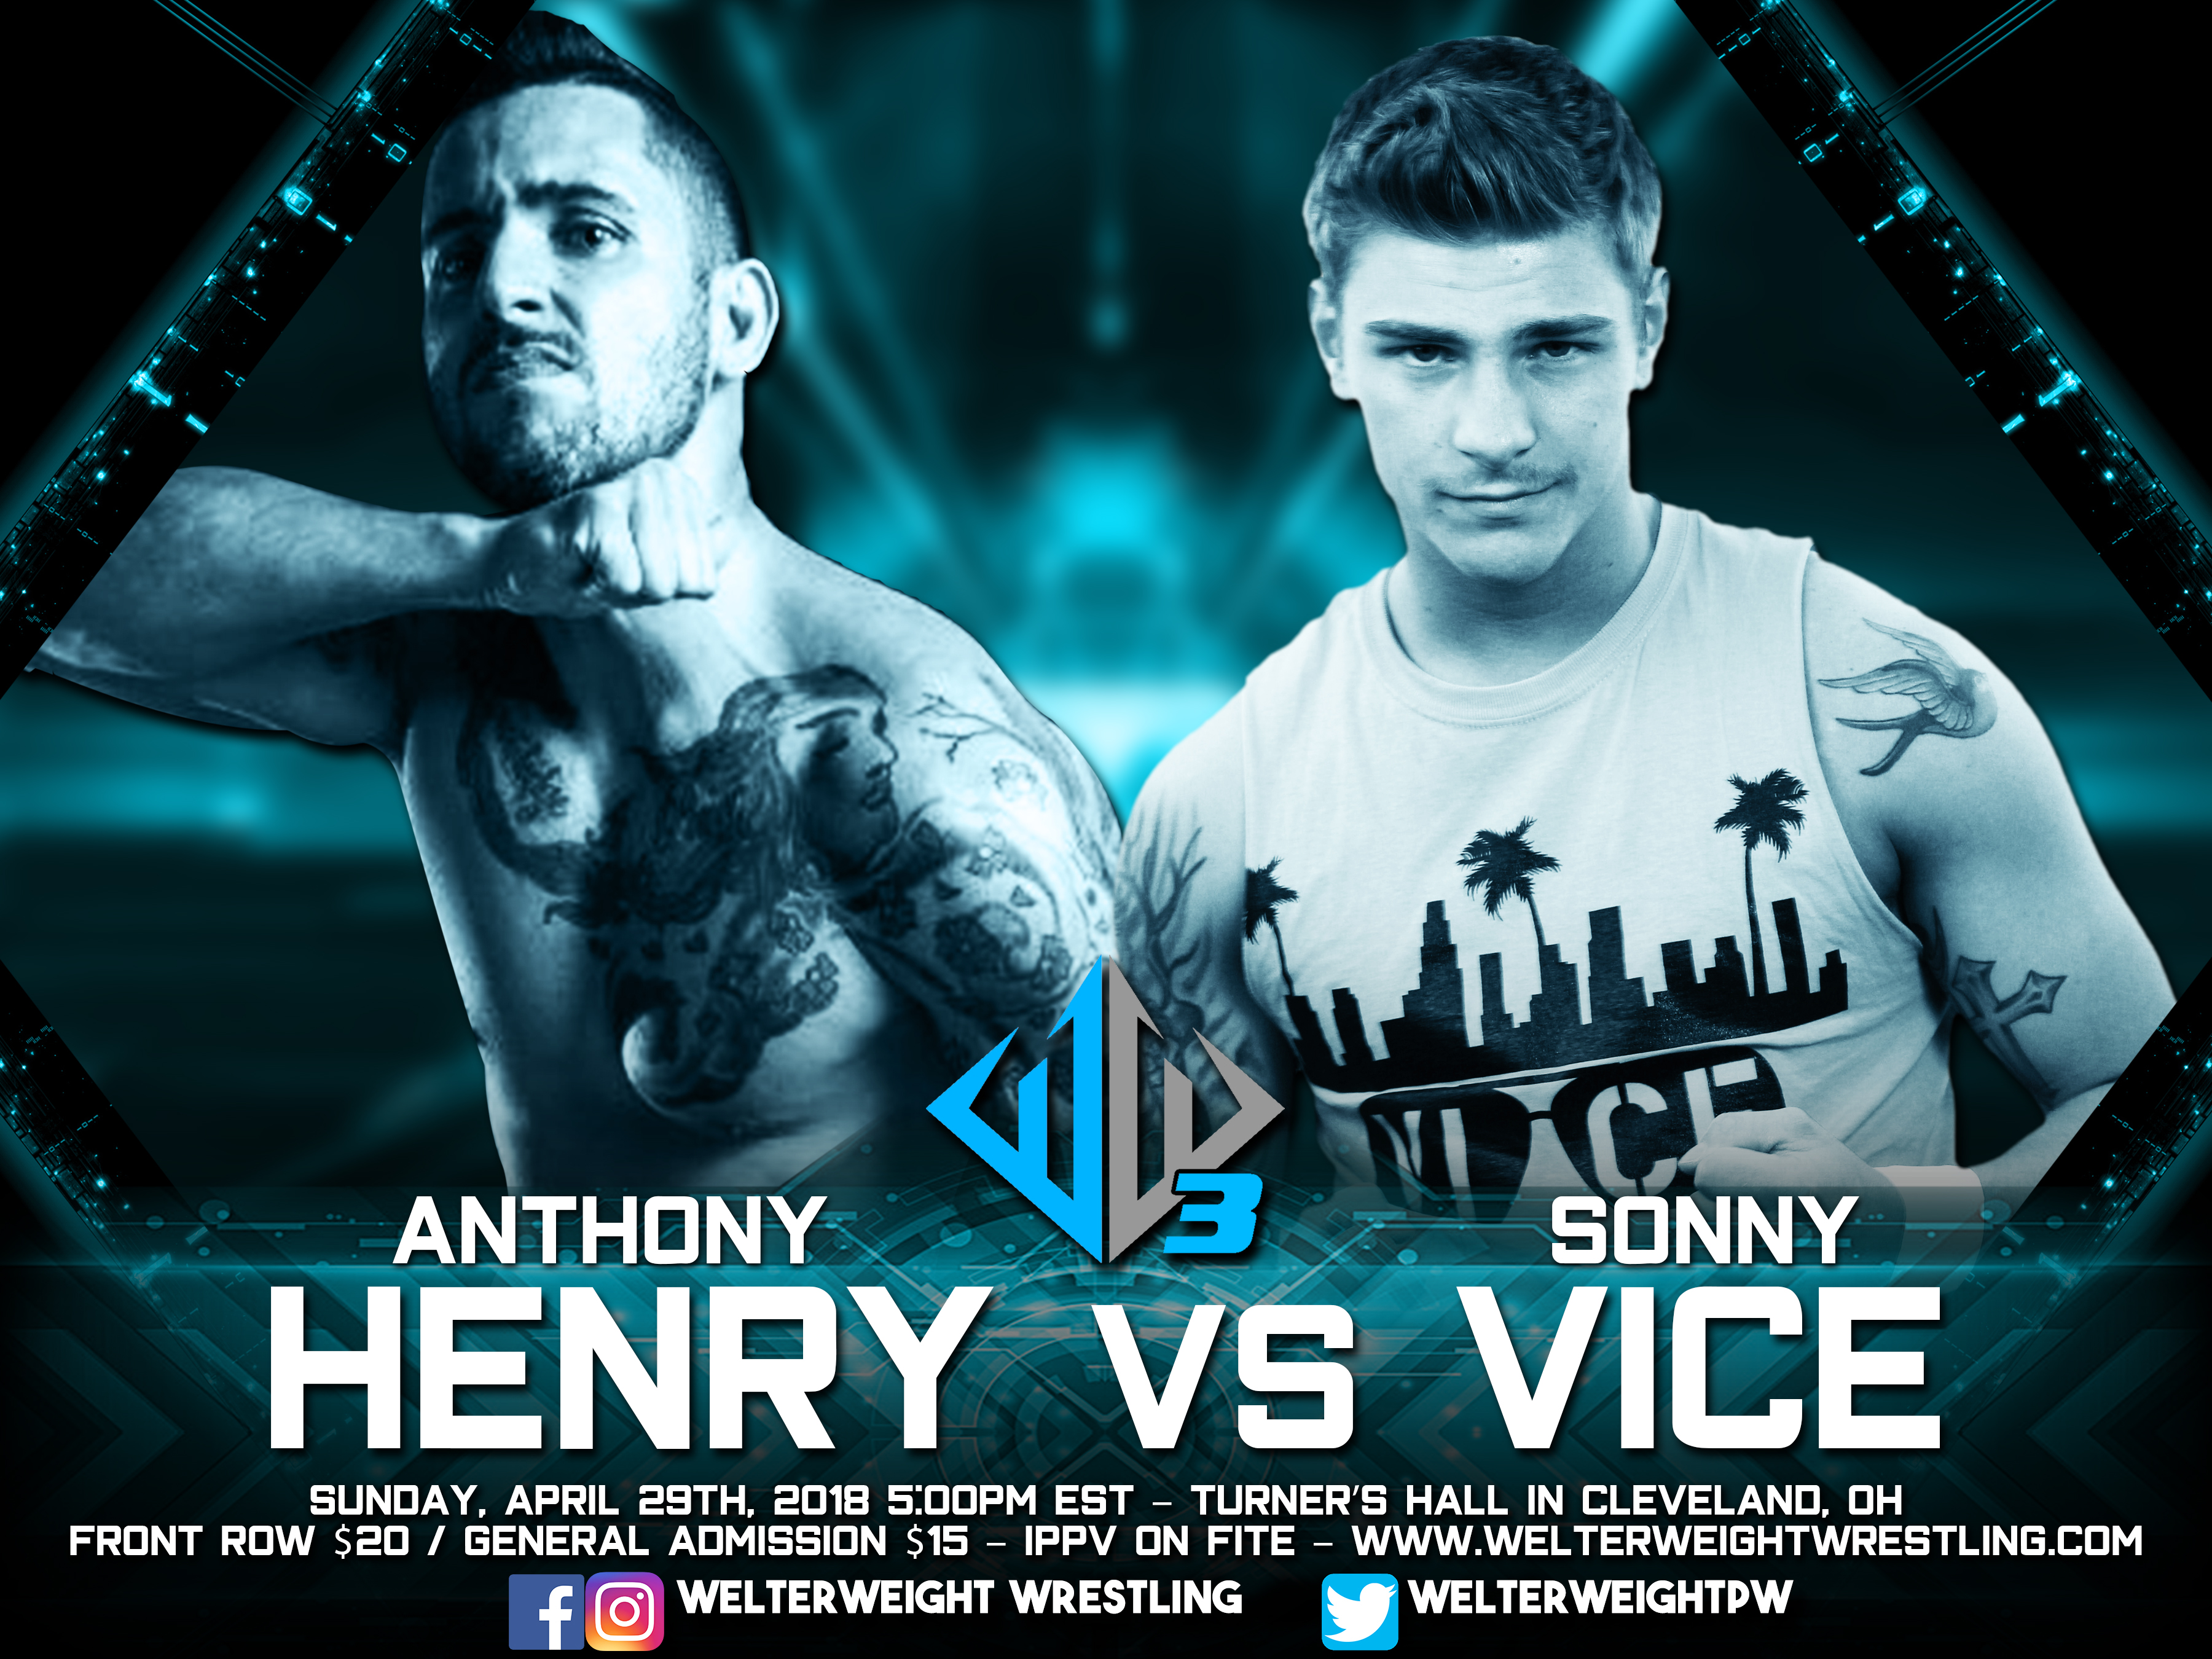 Anthony henry vs Sonny Vice